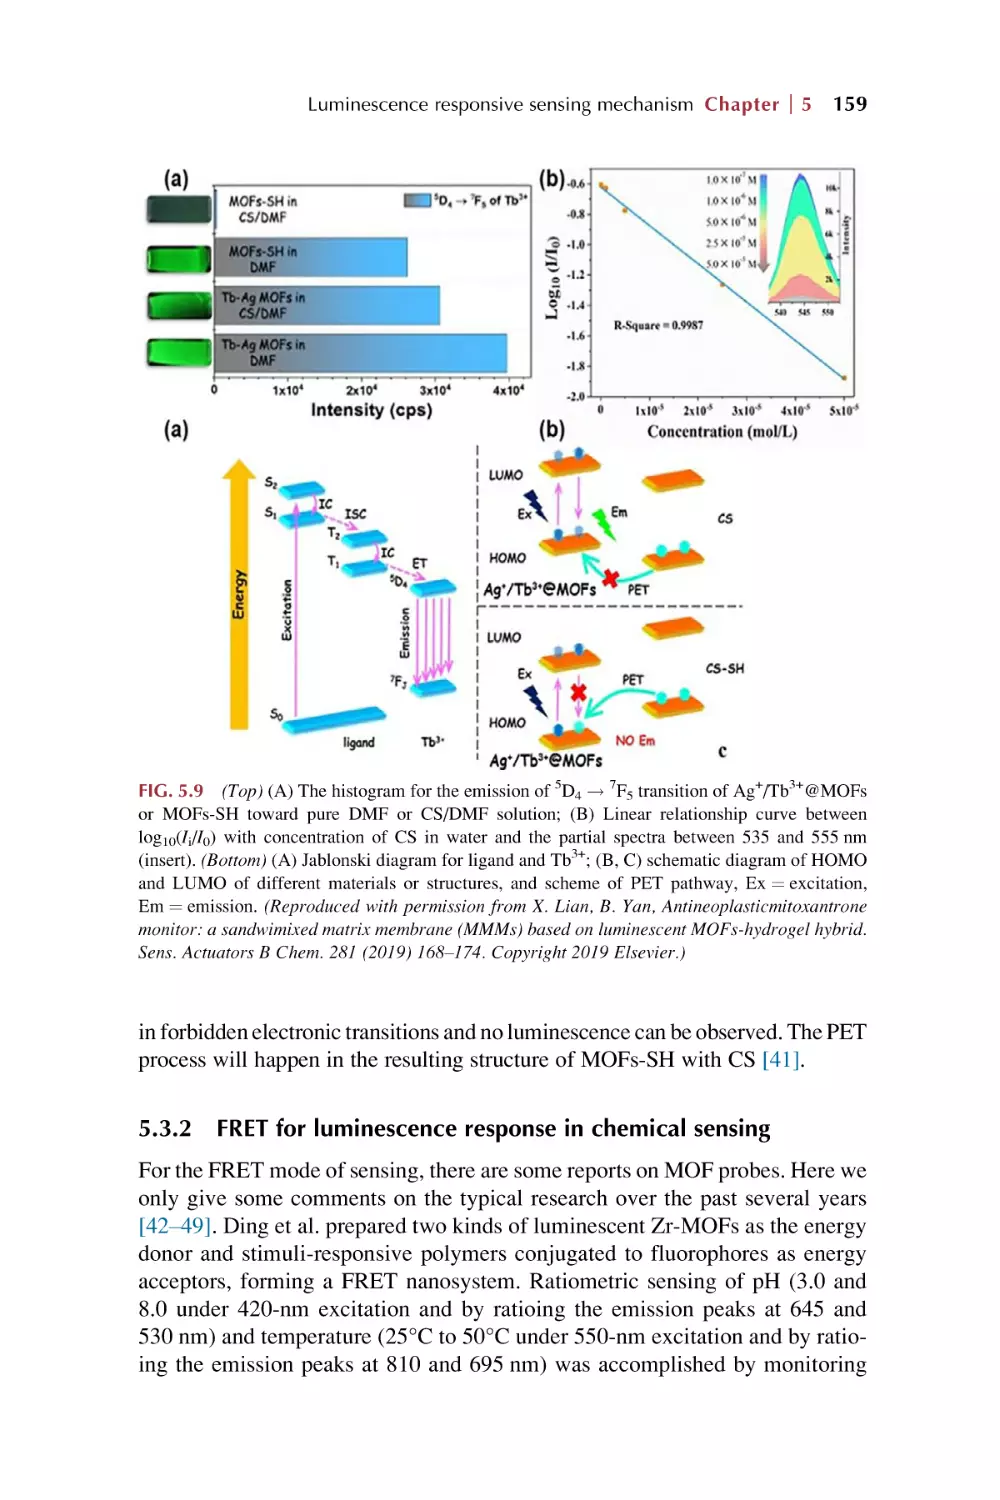 5.3.2. FRET for luminescence response in chemical sensing